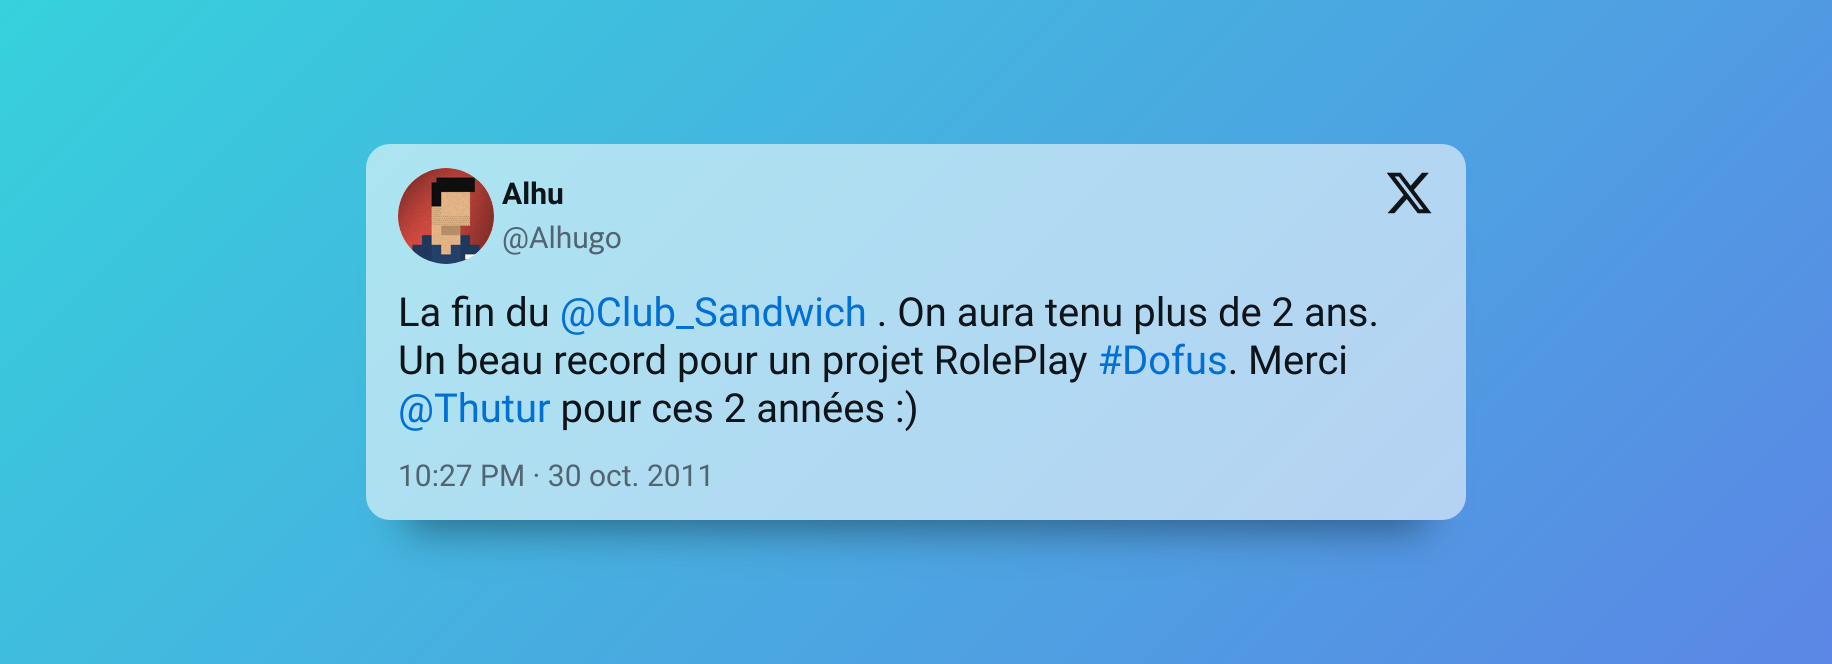 ge à la communauté sur les réseaux sociaux. Alhugo, un membre actif du Club Sandwich, a ainsi tweeté : "La fin du @Club_Sandwich . On aura tenu plus de 2 ans. Un beau record pour un projet RolePlay #Dofus. Merci @Thutur pour ces 2 années